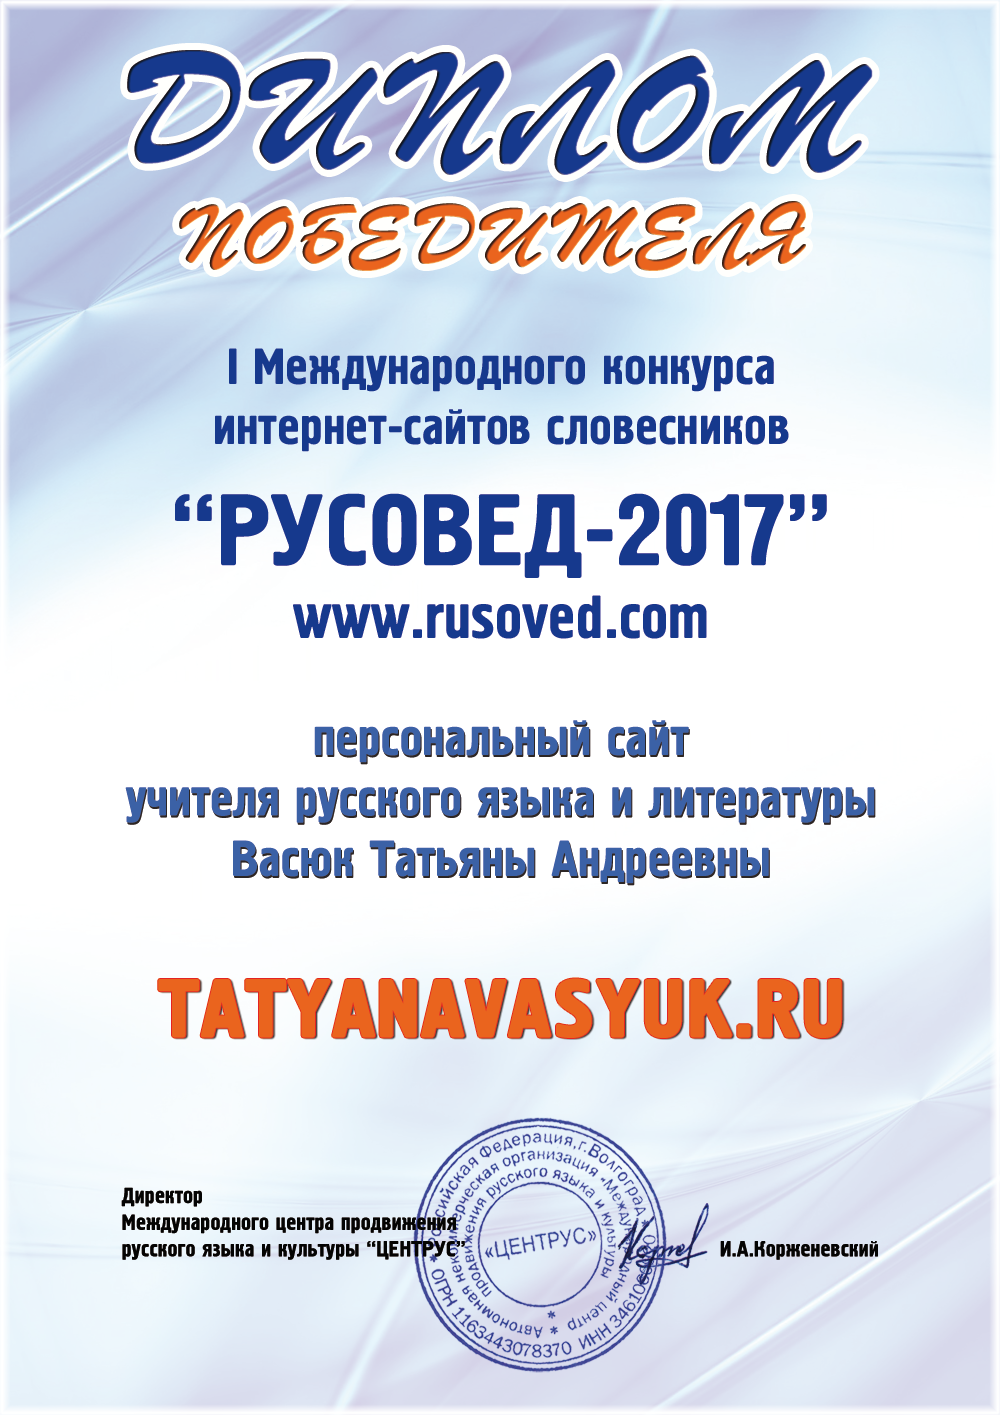 Диплом победителя I Международного конкурса интернет-сайтов РУСОВЕД-2017